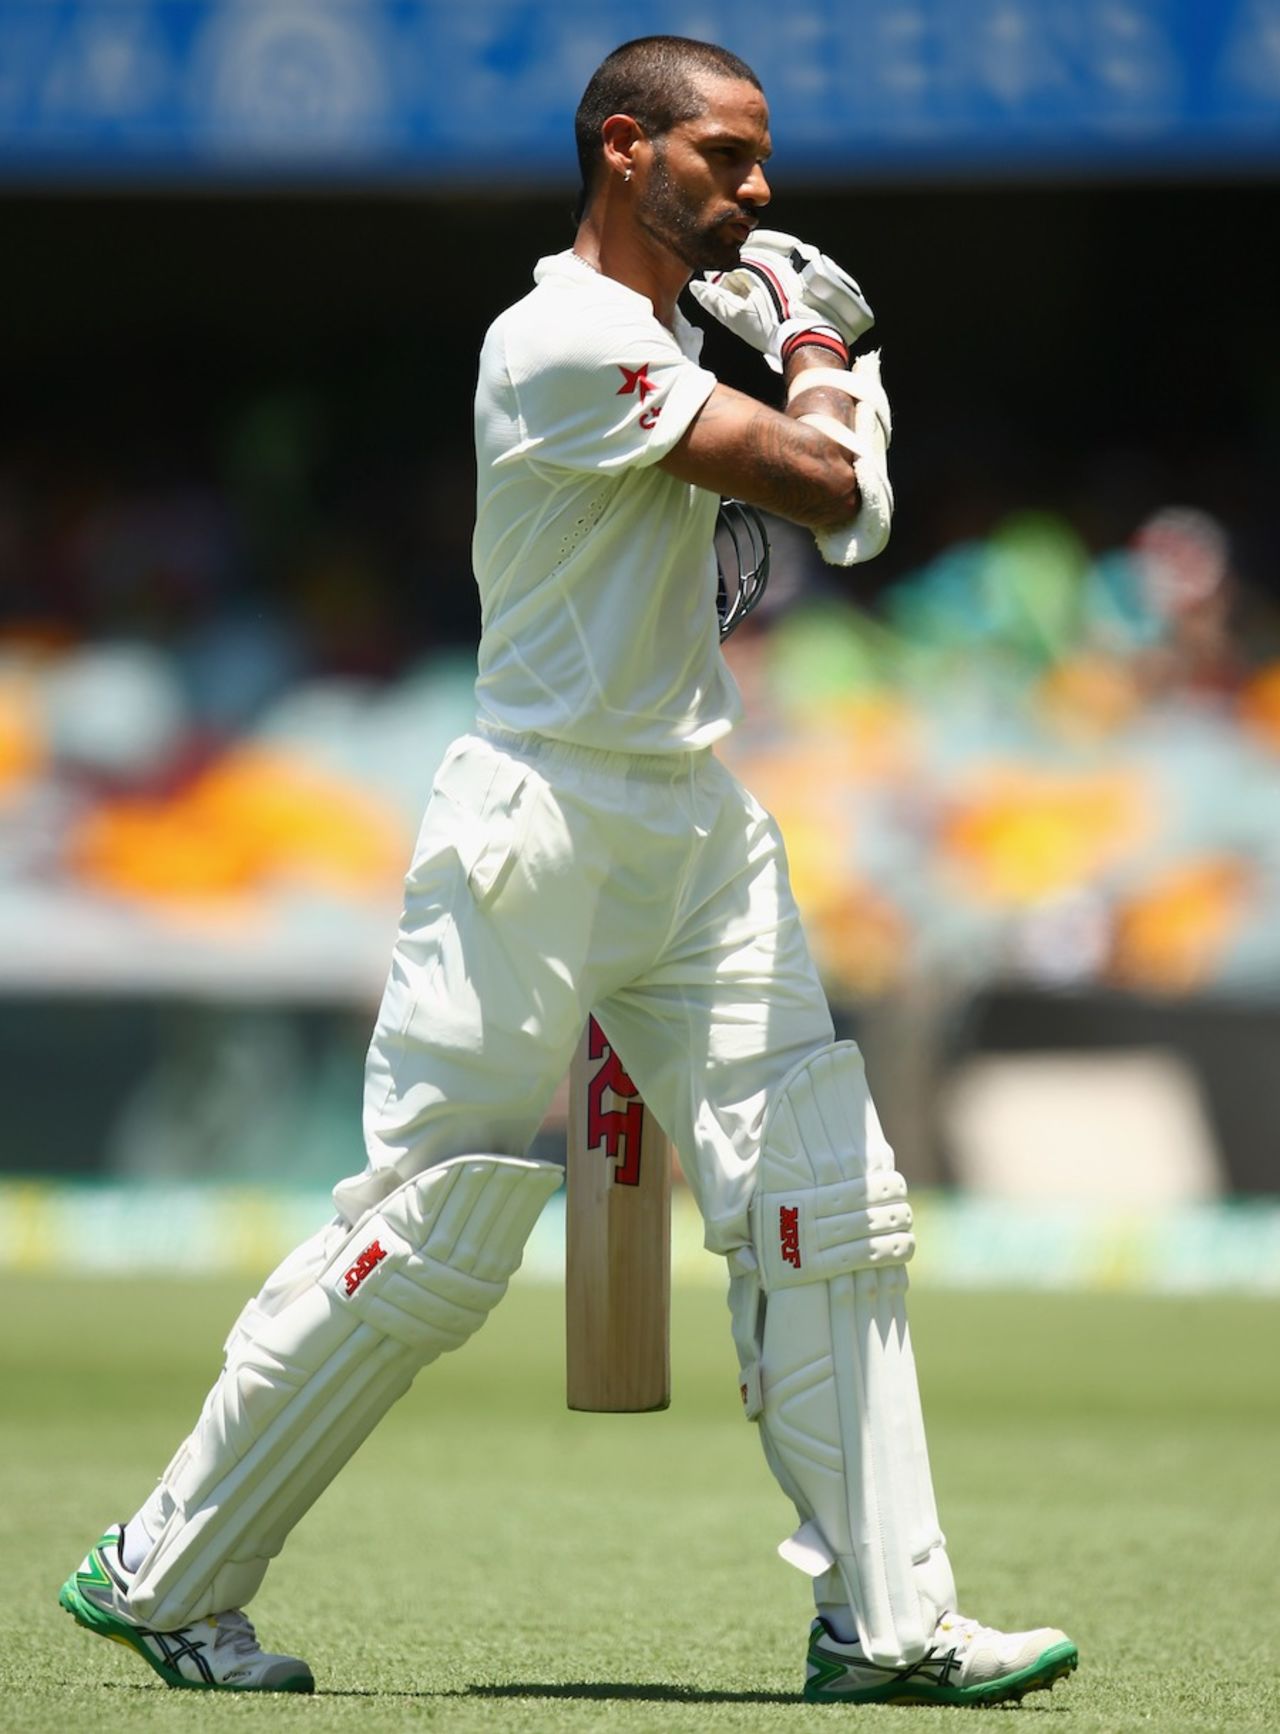 Shikhar Dhawan was dismissed for 24, Australia v India, 2nd Test, Brisbane, 1st day, December 17, 2014